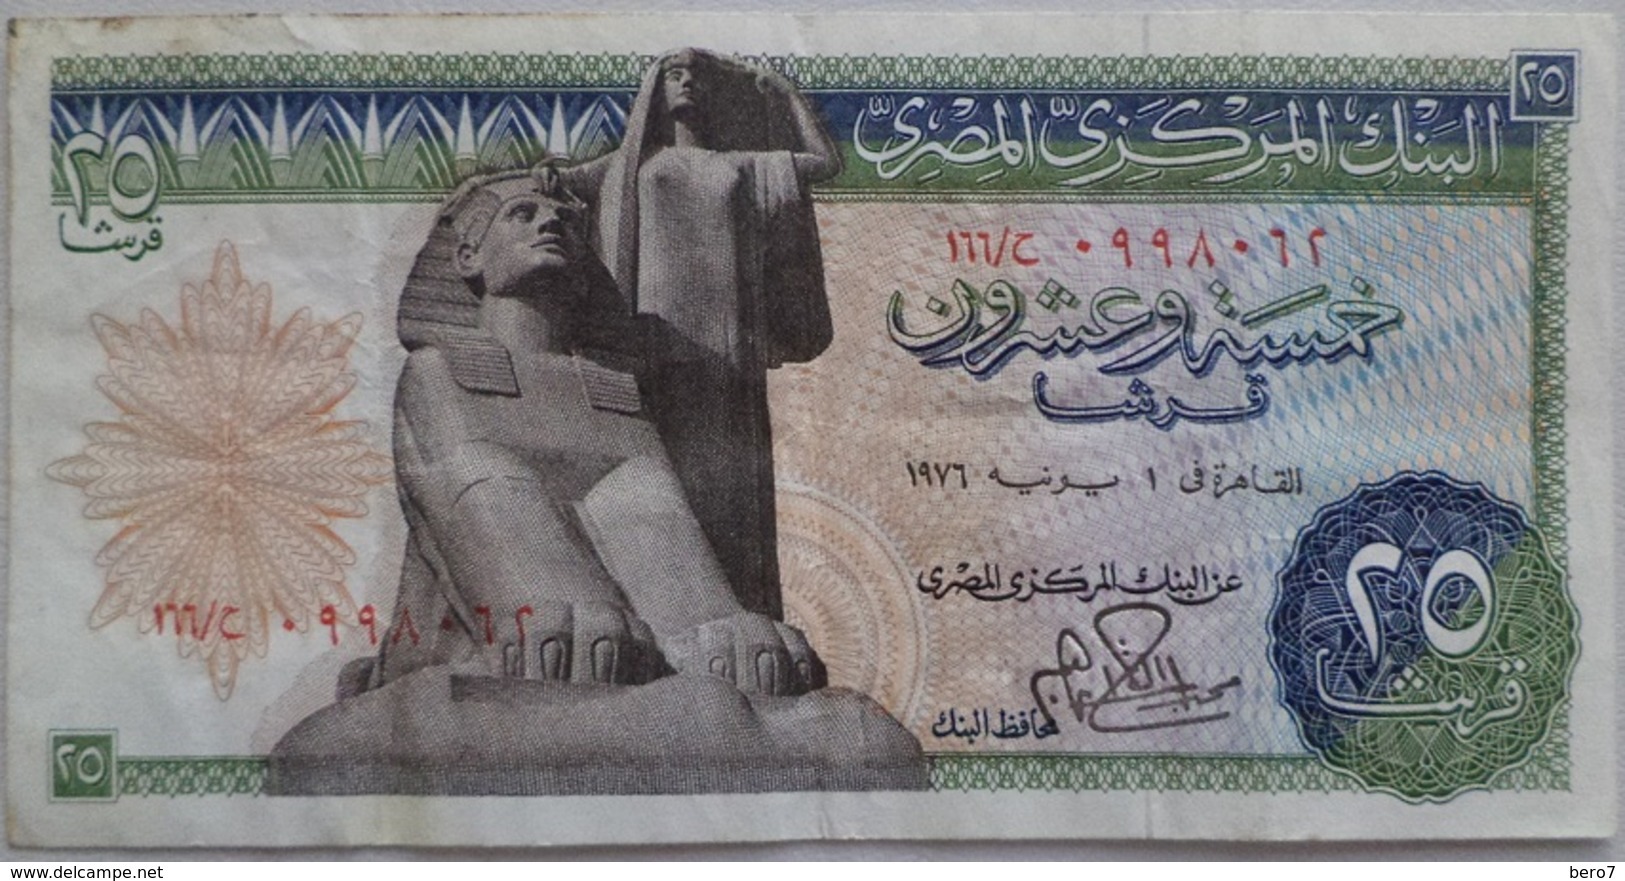 25 Piasters Egypt - 1 June 1976 - SIG/ Abdel Fattah Ibrahim (Egypte) (Egitto) (Ägypten) (Egipto) (Egypten)  Africa - Egypt